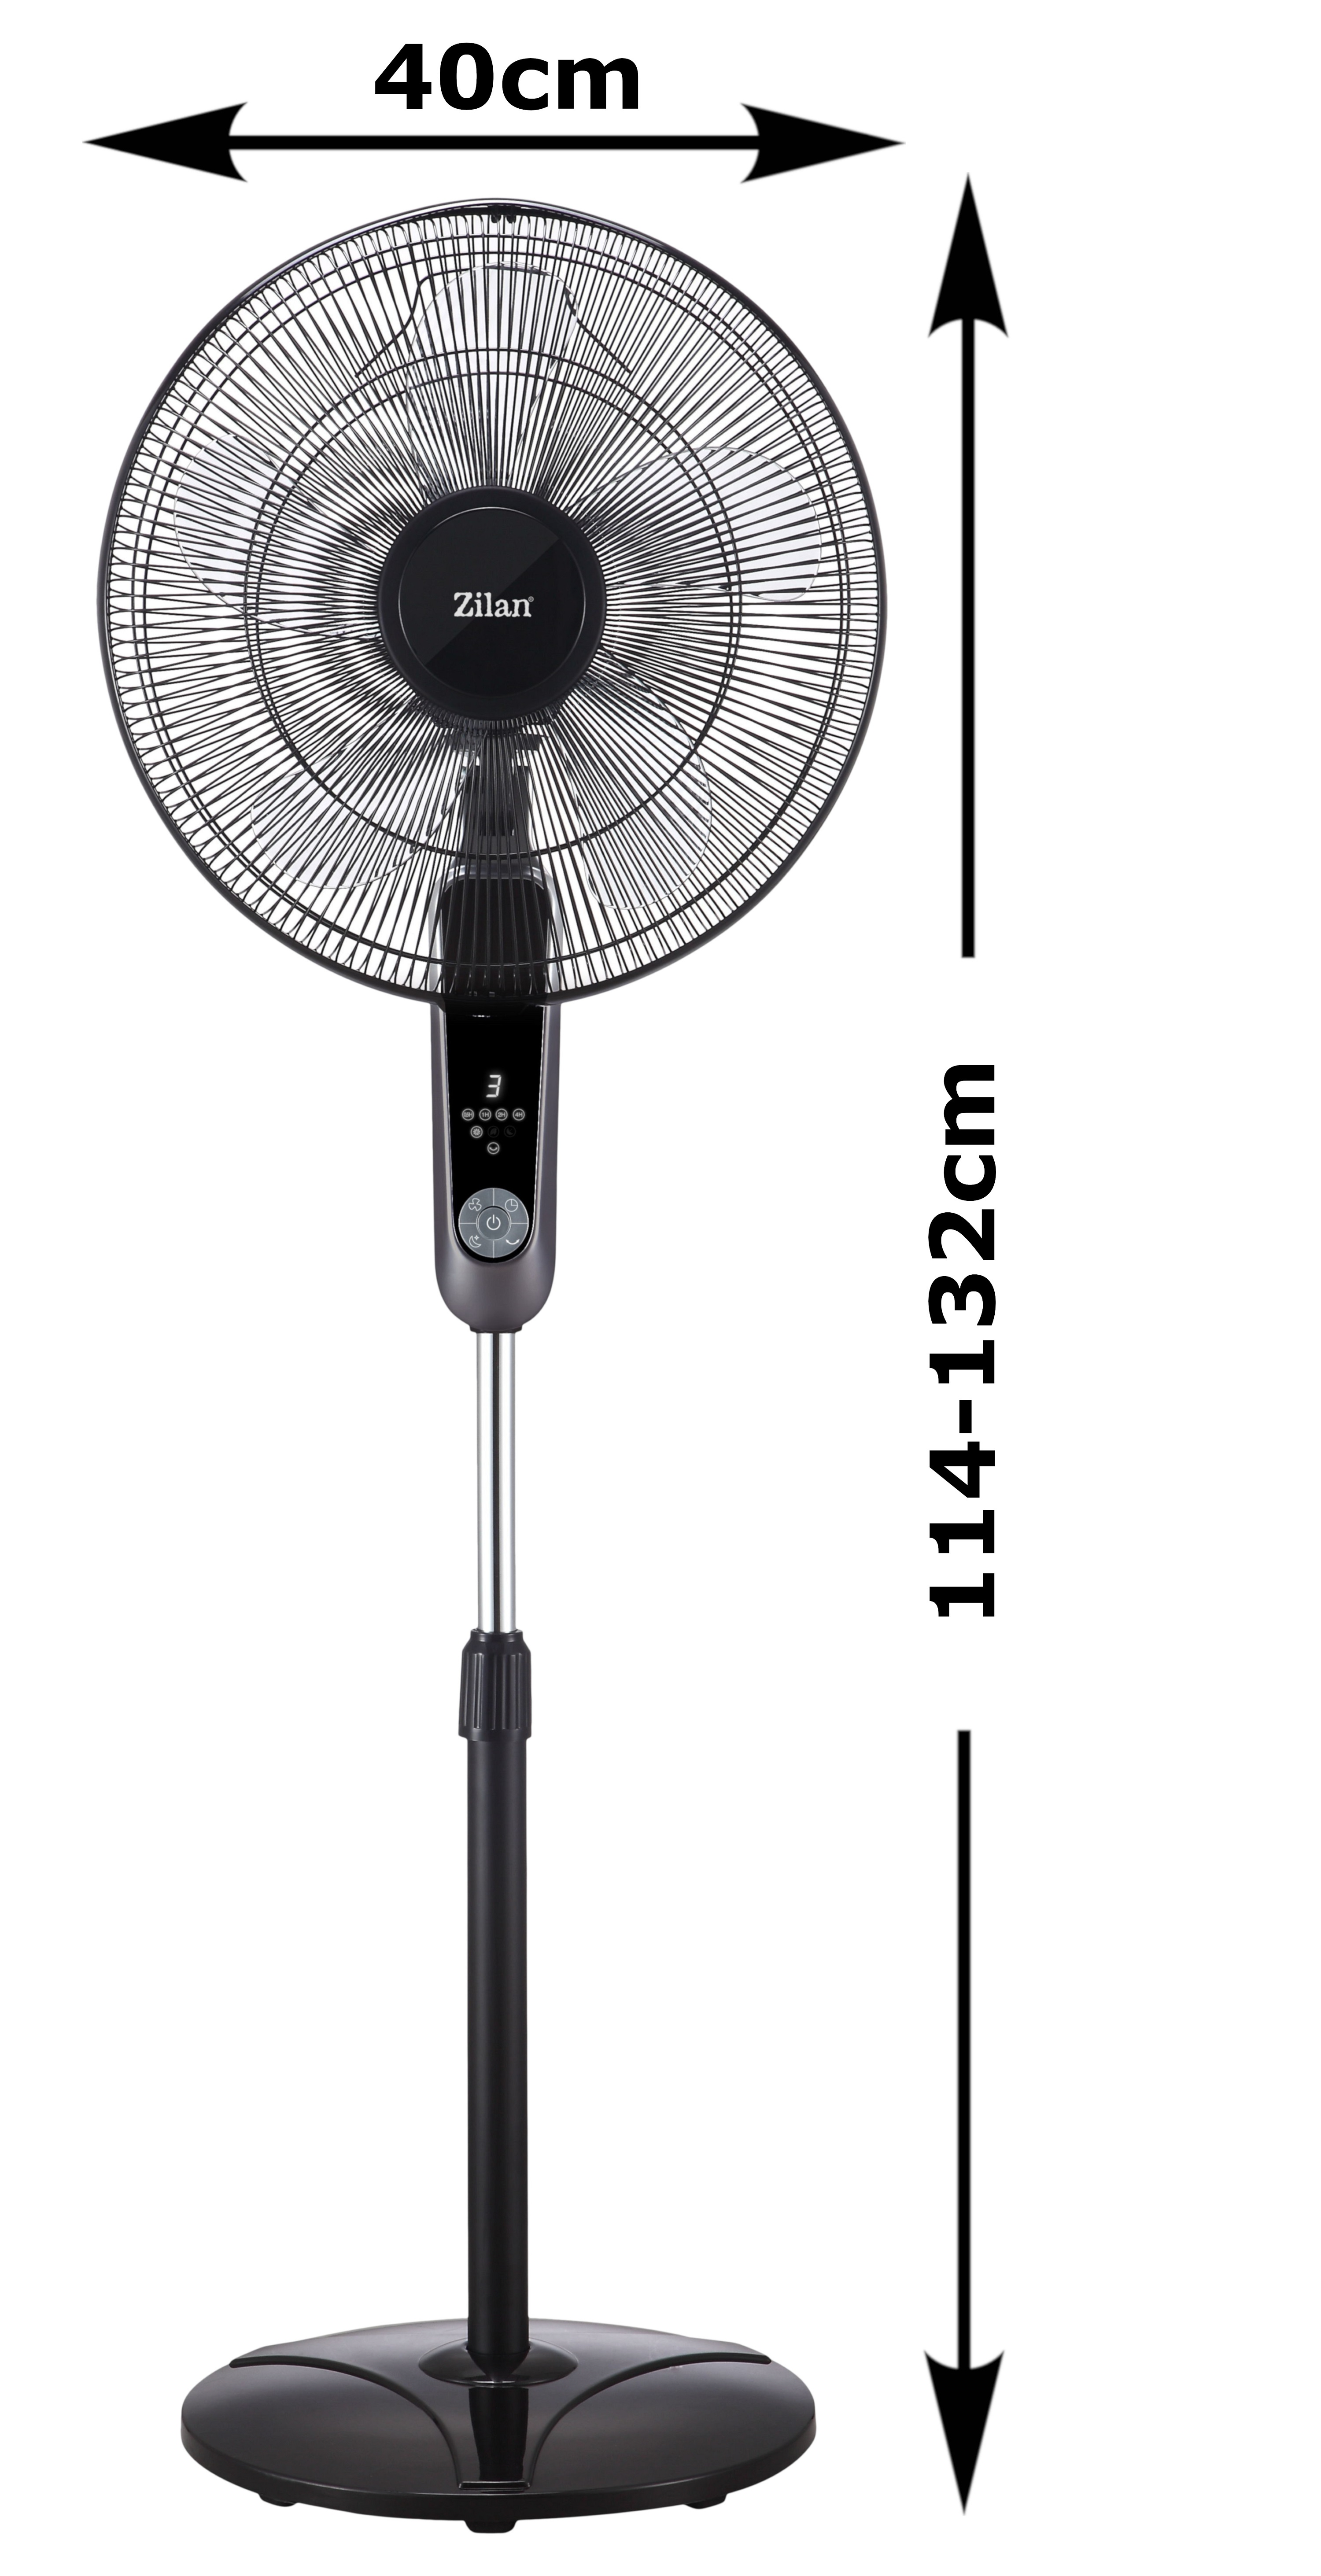 Santorino Ventilator (60 ZILAN Watt) ZLN-1185 Schwarz